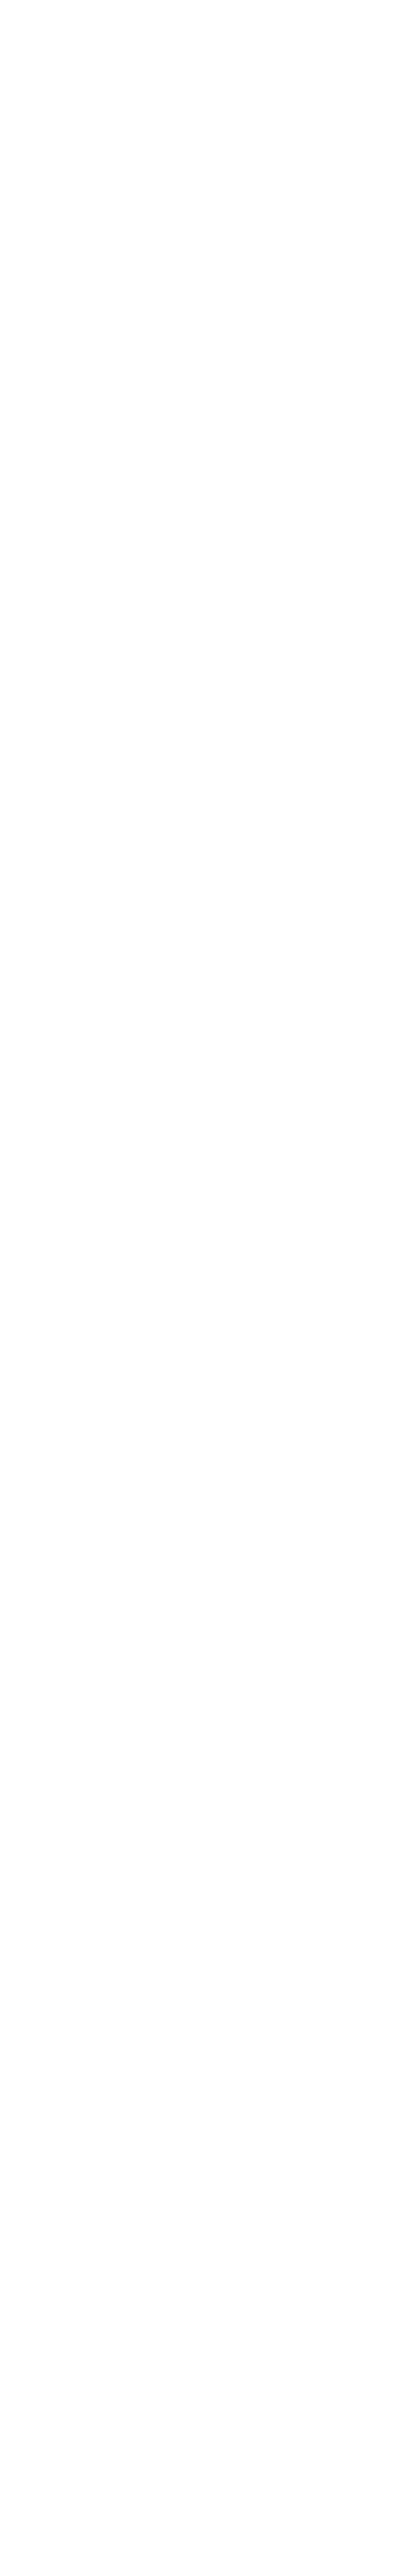 Clogs Logo